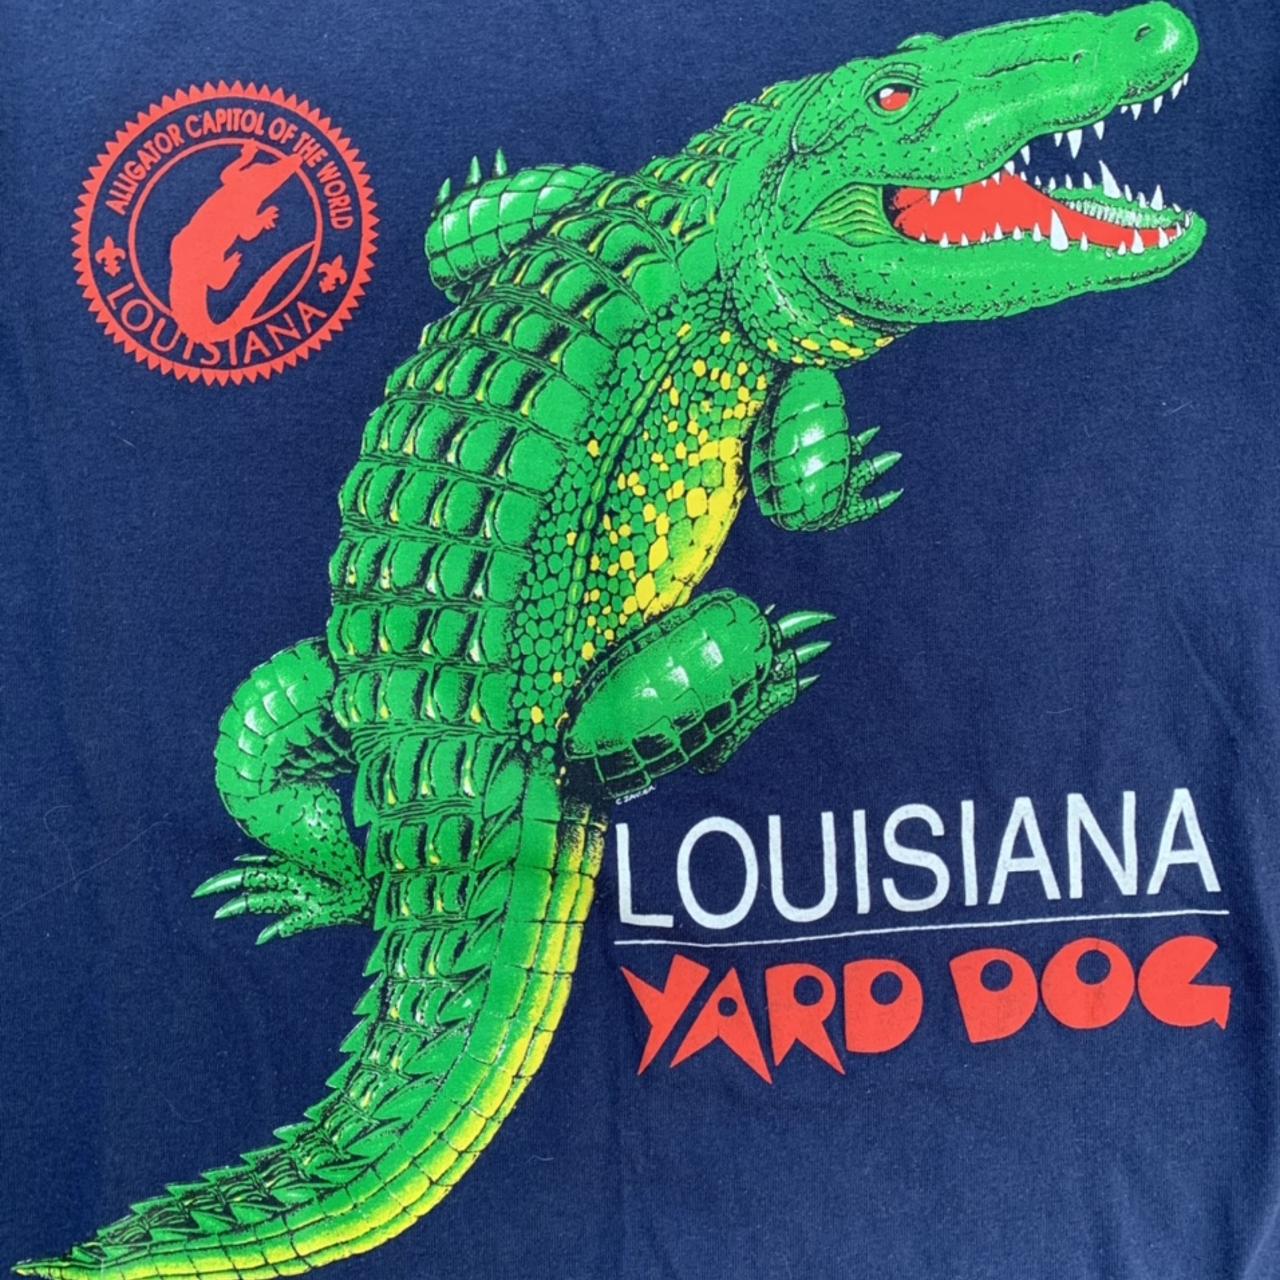 New Orleans Louisiana Yard Dog Sweatshirt 